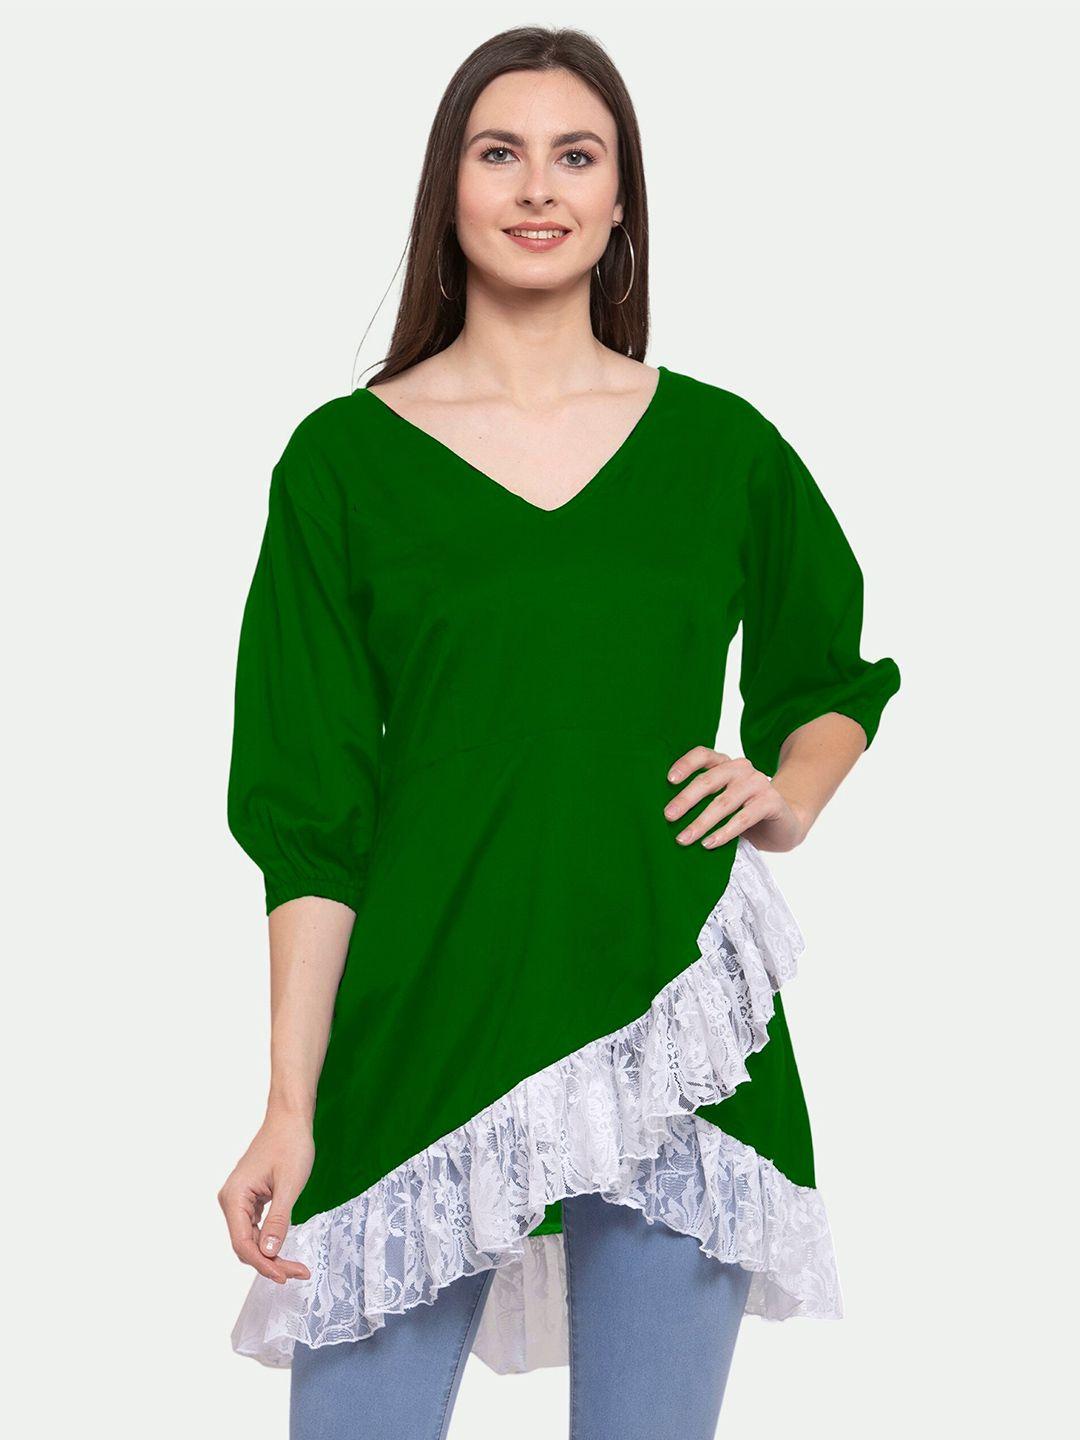 patrorna-women-green-wrap-longline-top